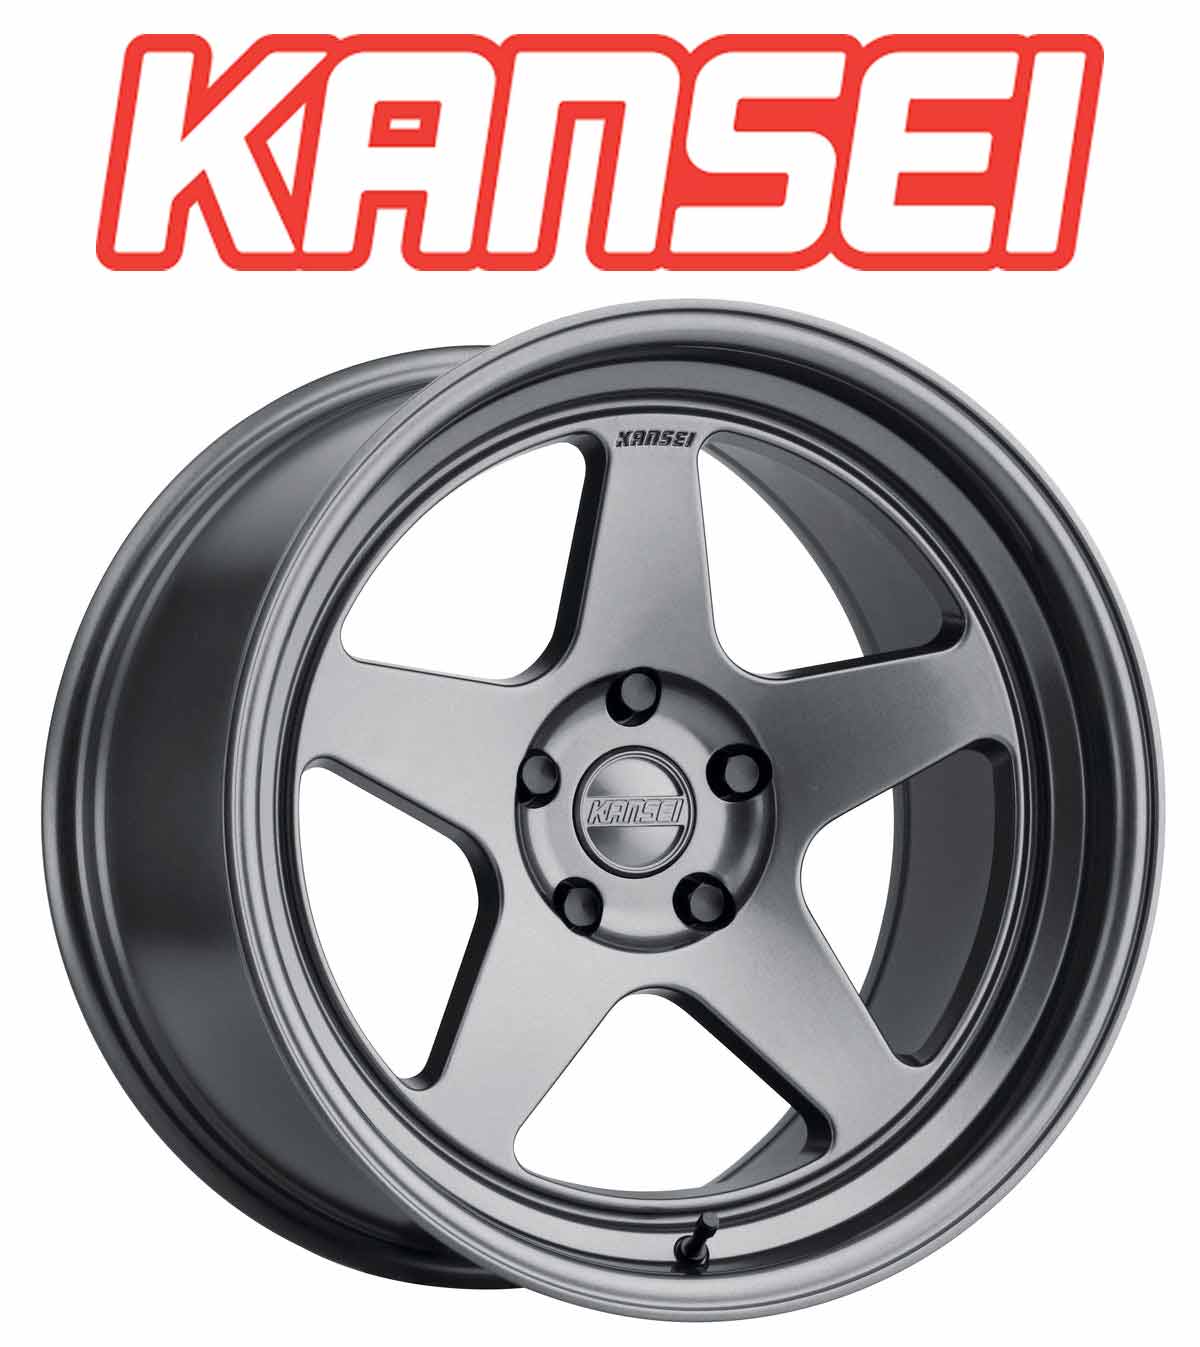 Kansei Wheels